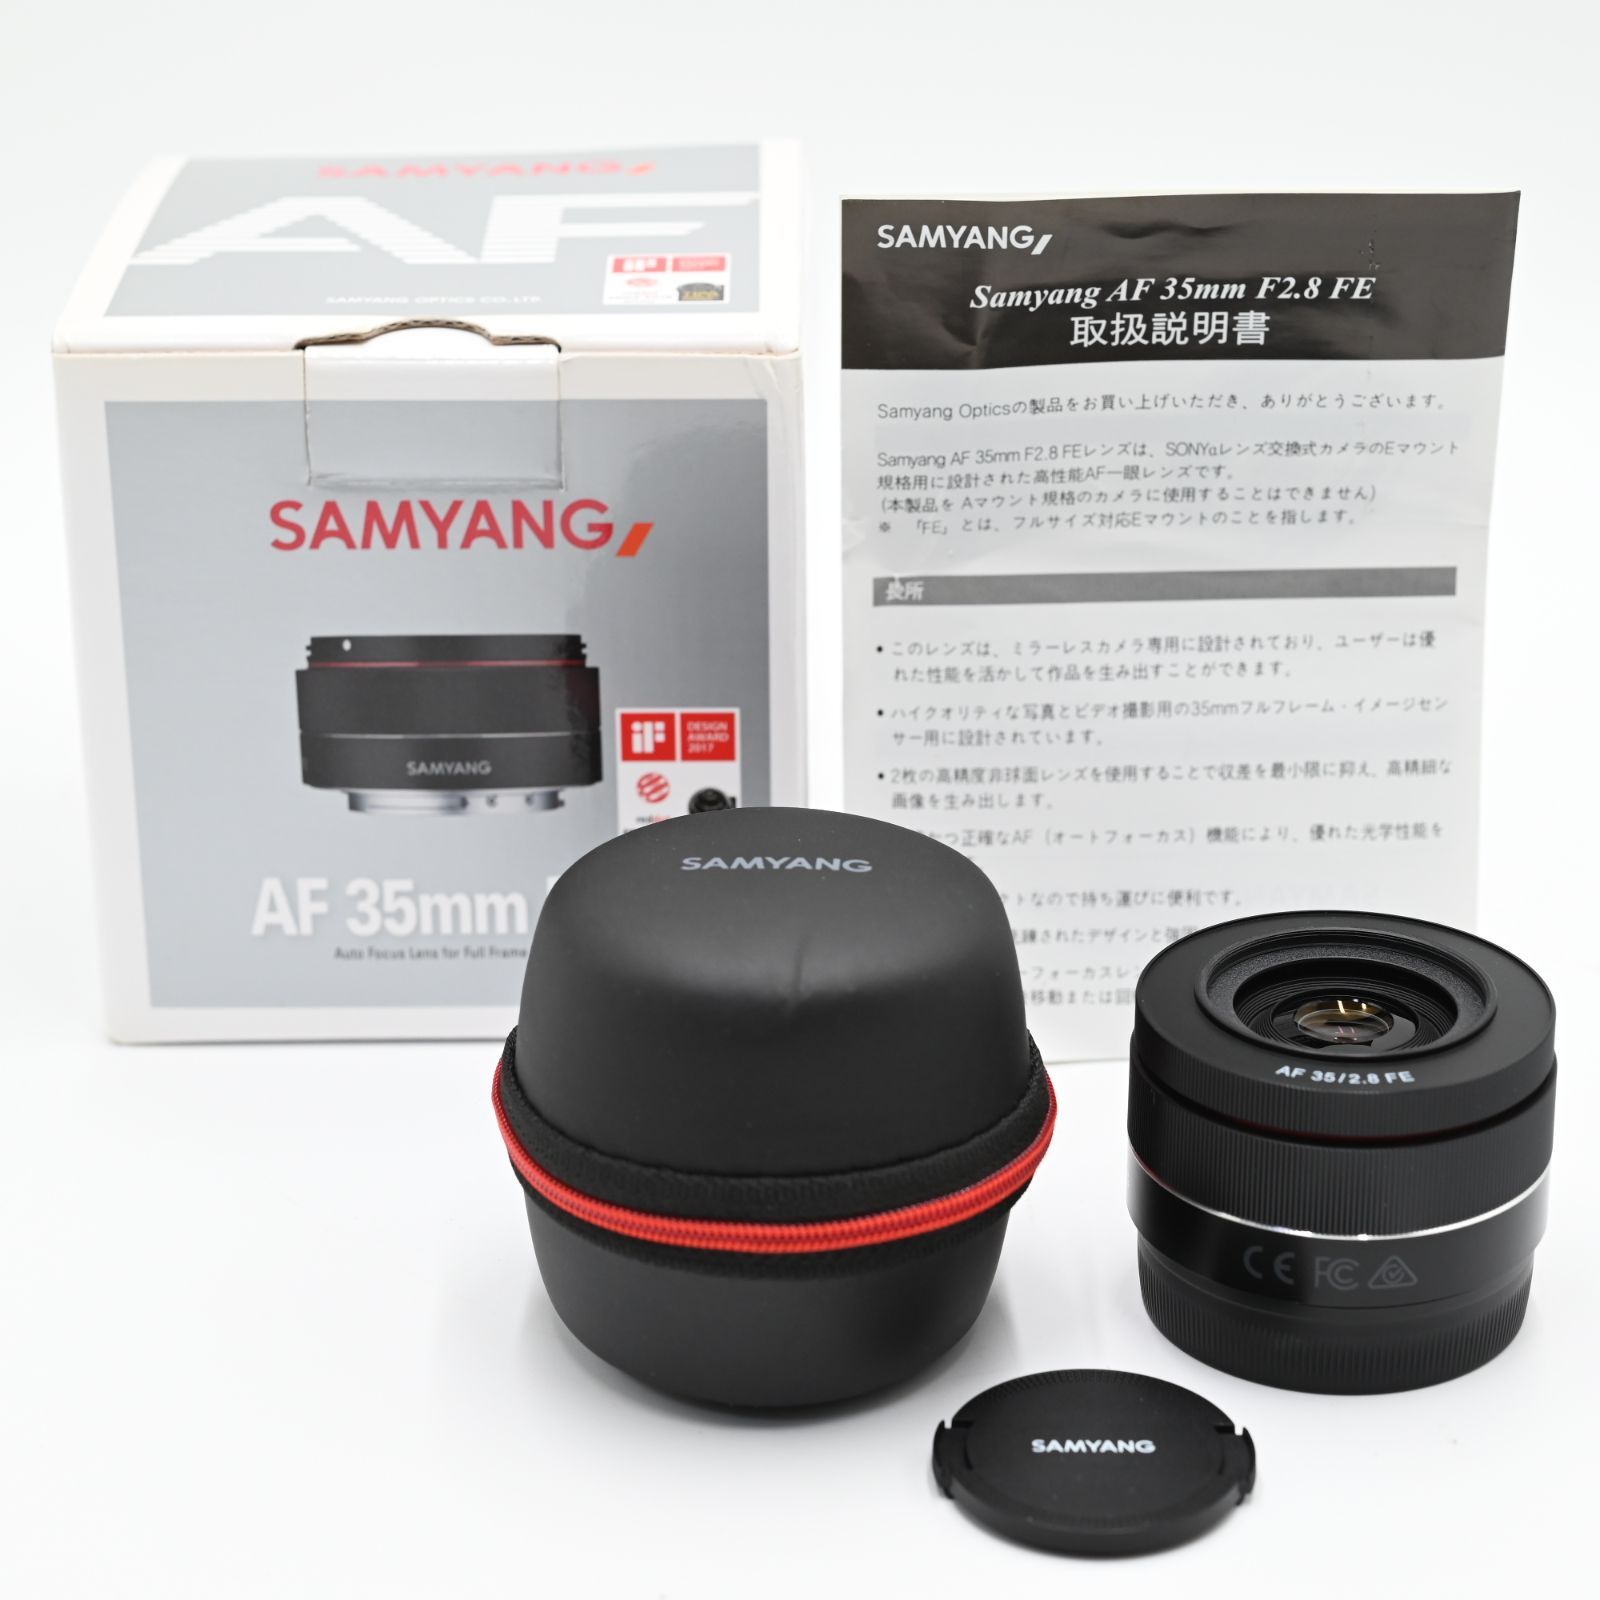 SAMYANG 単焦点広角レンズ AF 35mm F2.8 FE ソニーαE用 フルサイズ対応